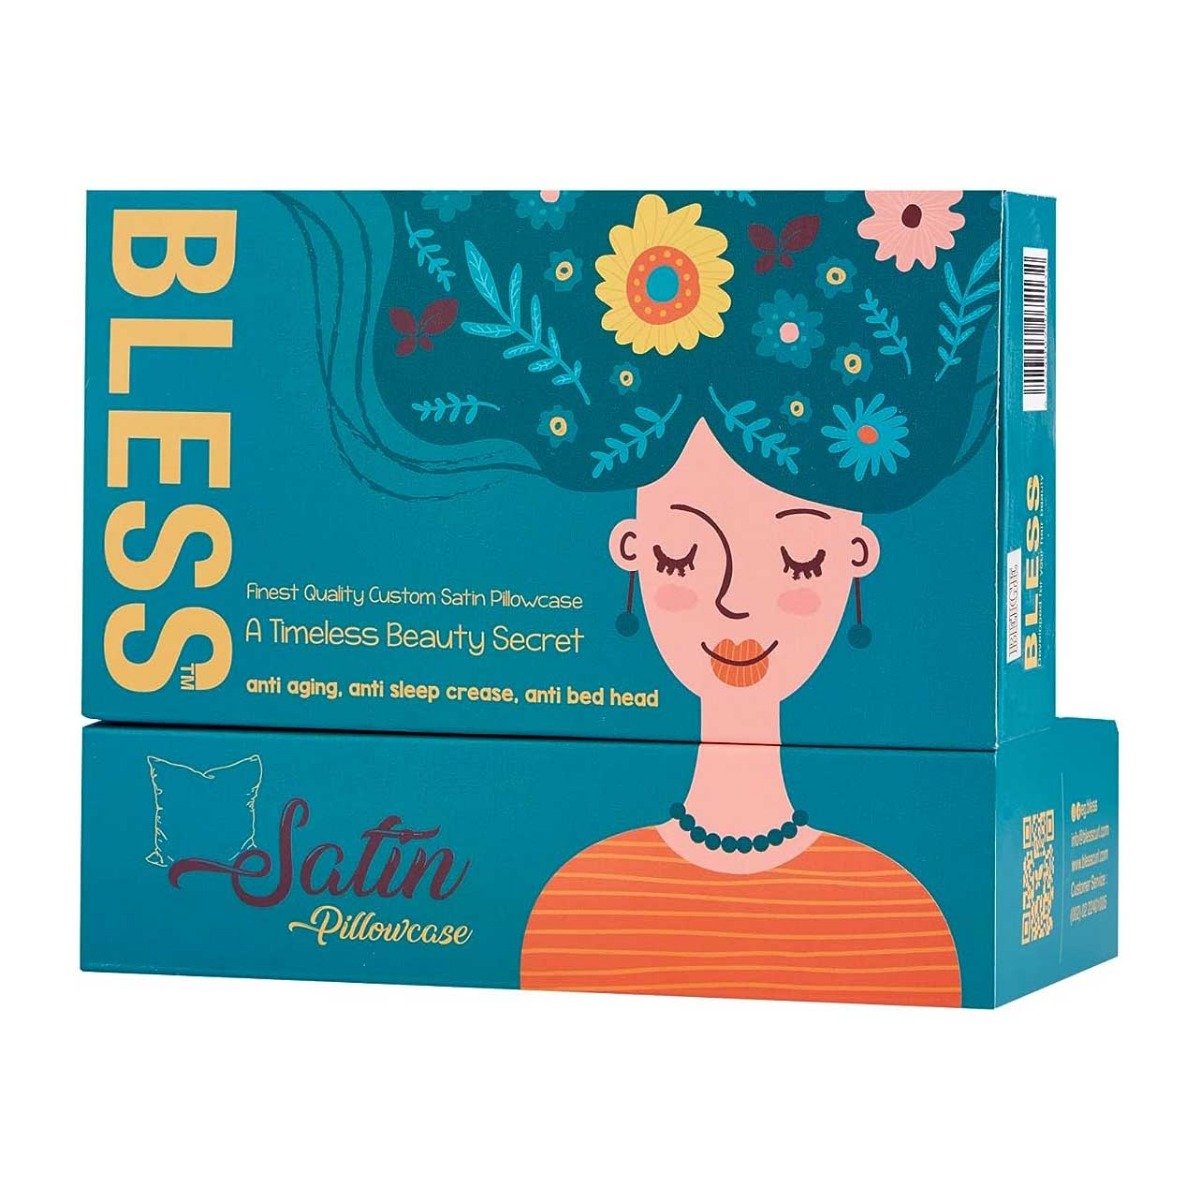 Bless Pillow Case - Beige - Bloom Pharmacy